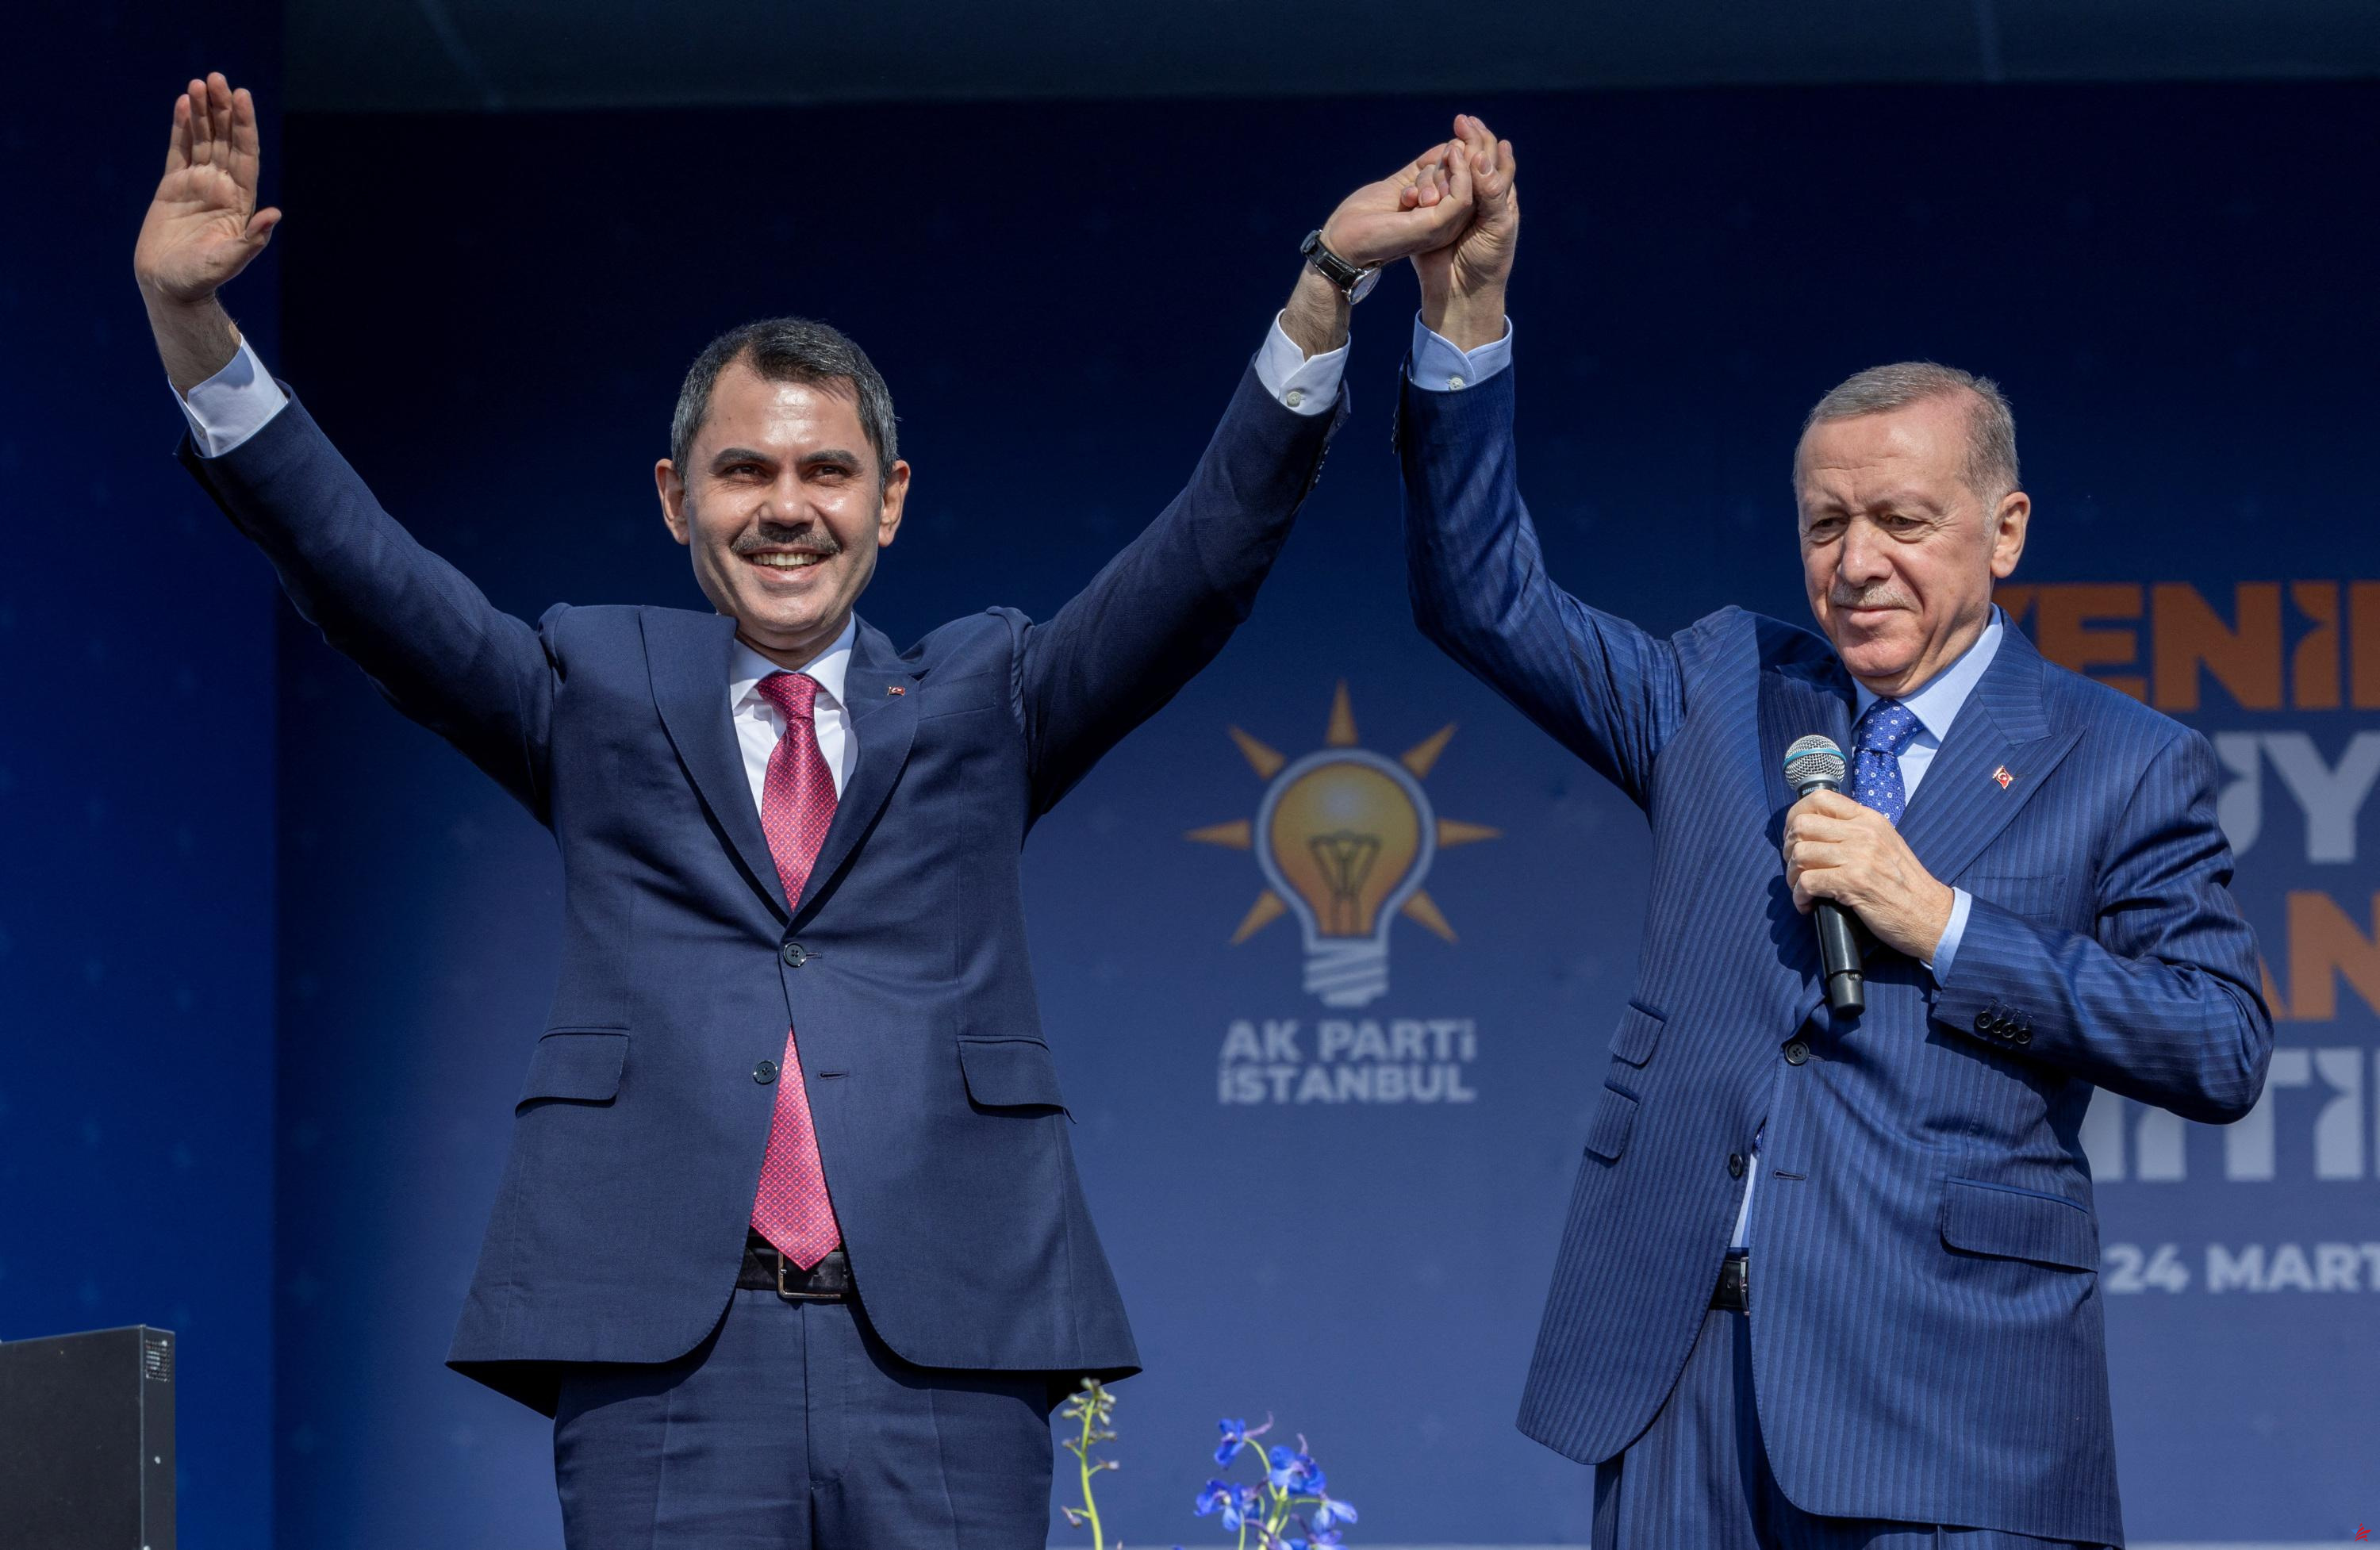 Elecciones municipales: “Una victoria del bando de Erdogan anclaría a Turquía en el conservadurismo y el nacionalismo”